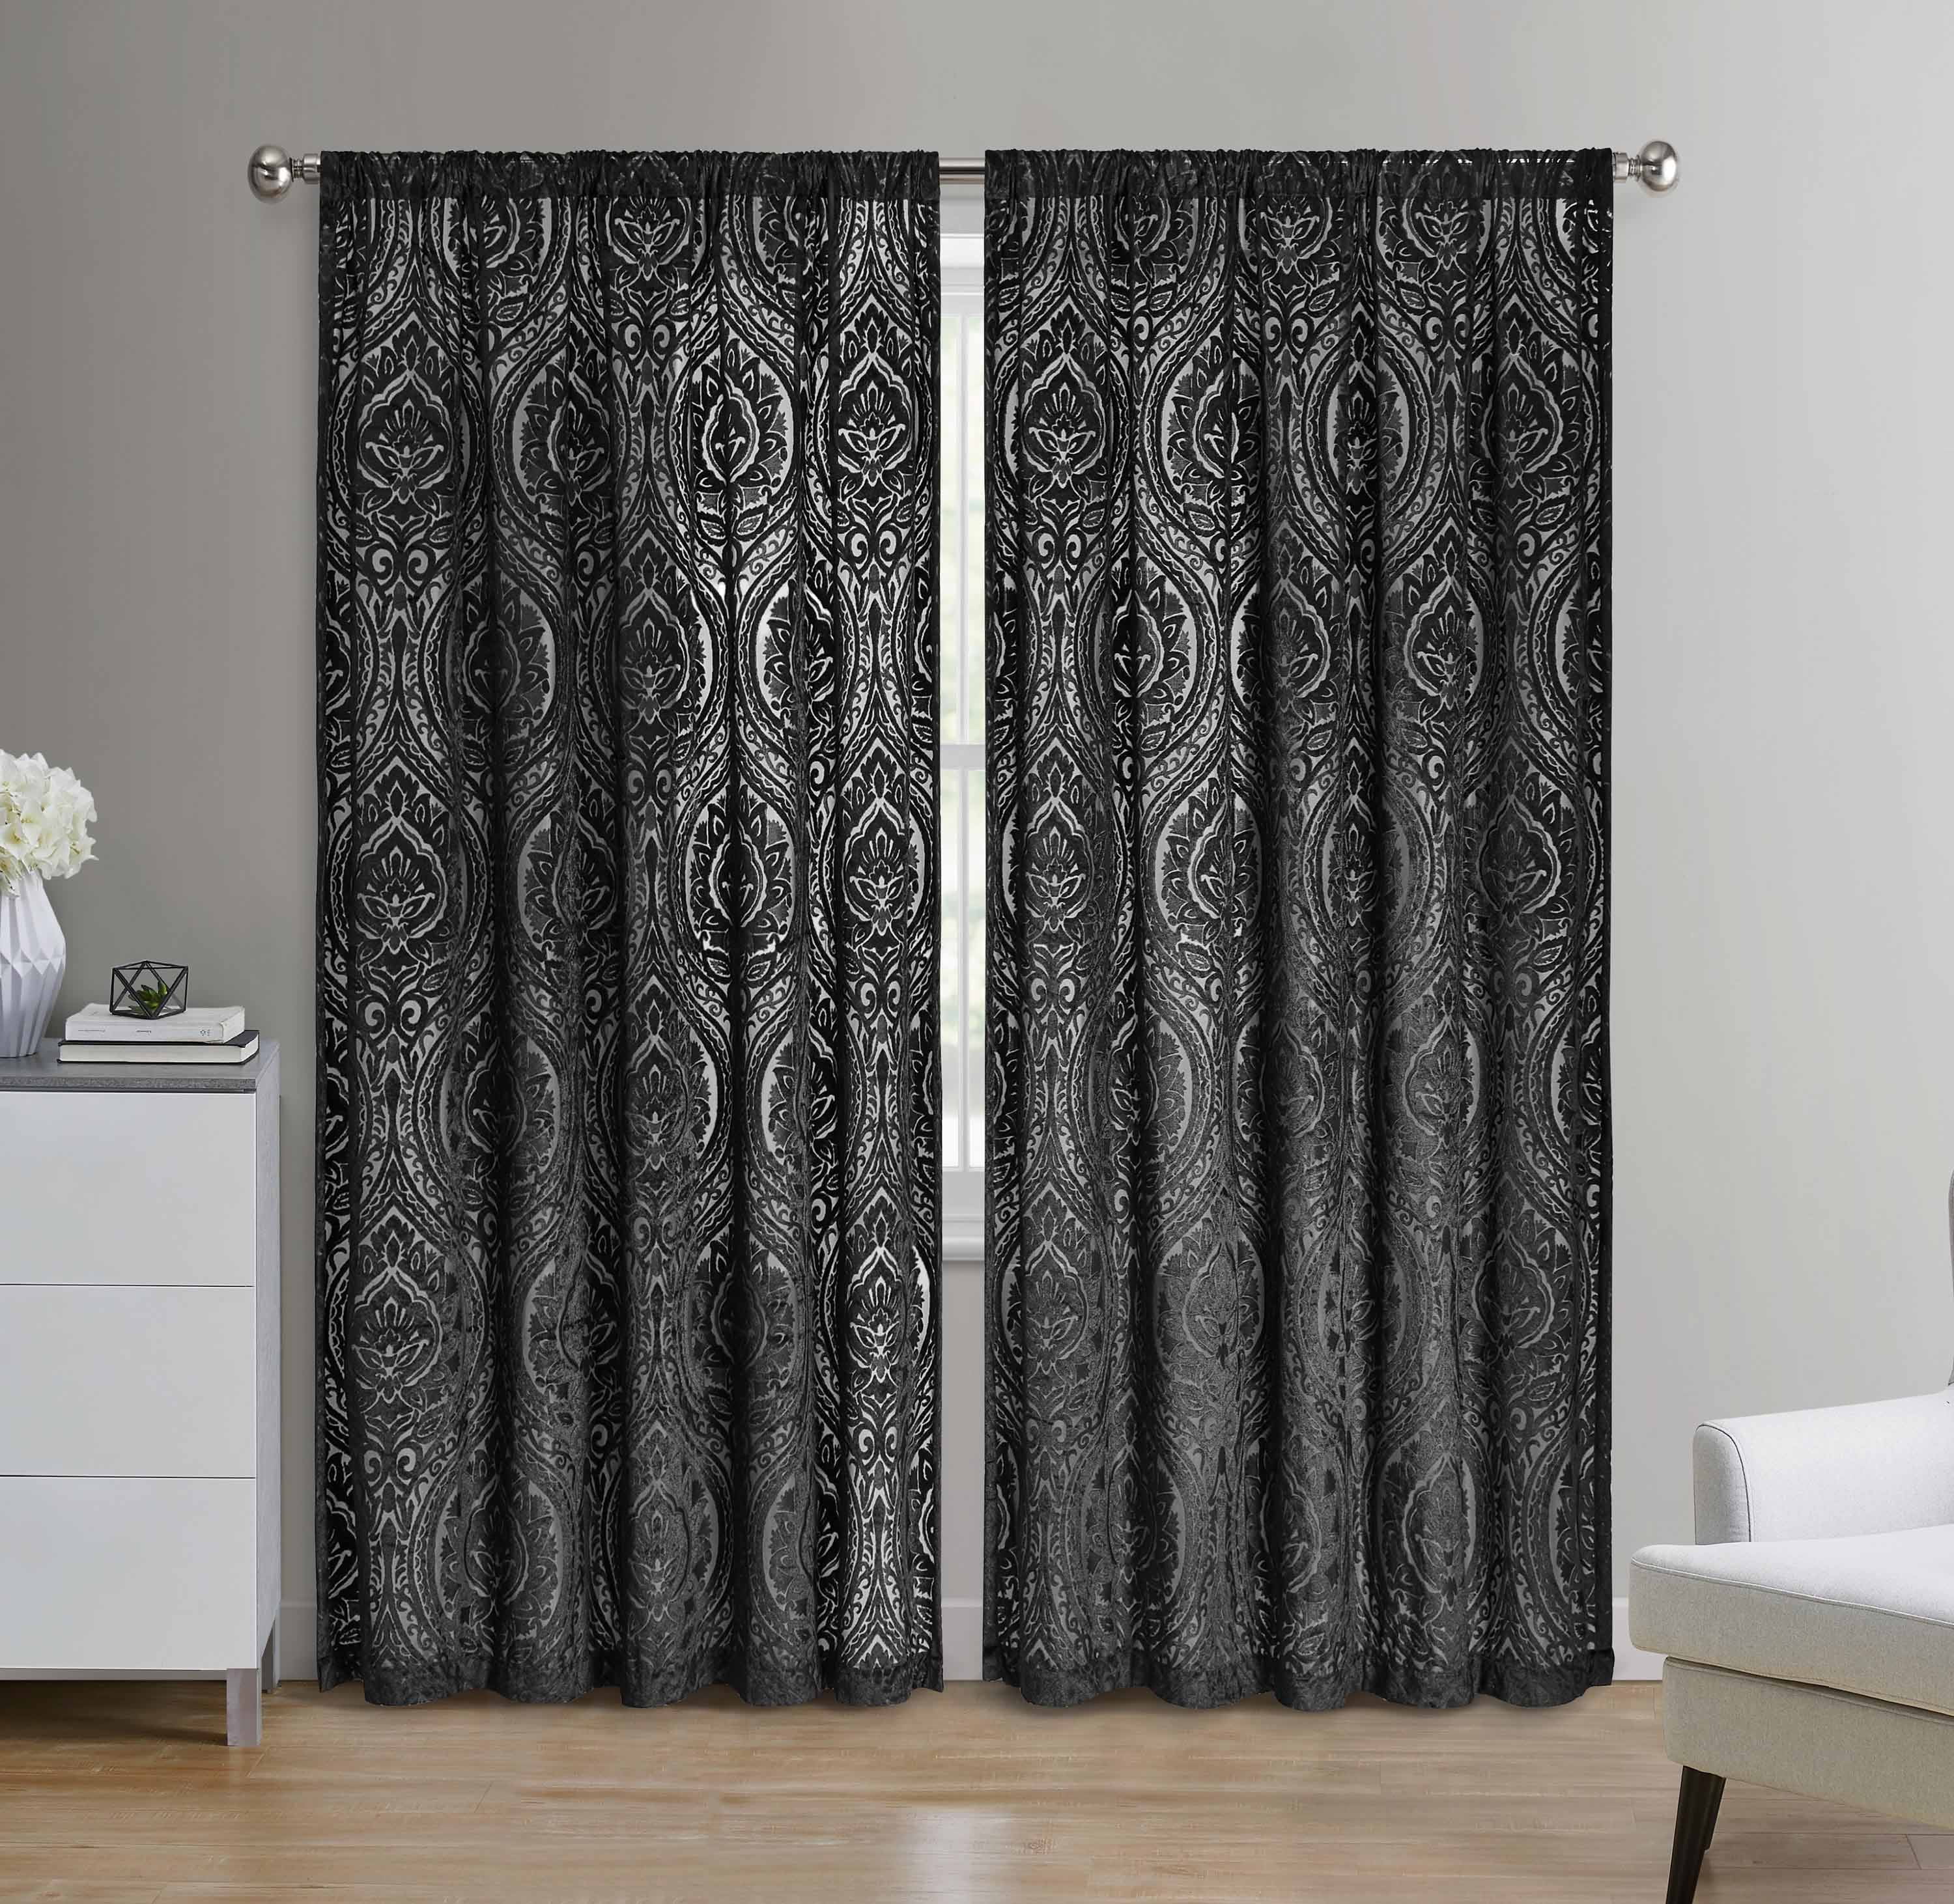 New 84" H White Bedroom/Living Room Velvet Curtain Drapes Panel w/Rod Pocket Top 